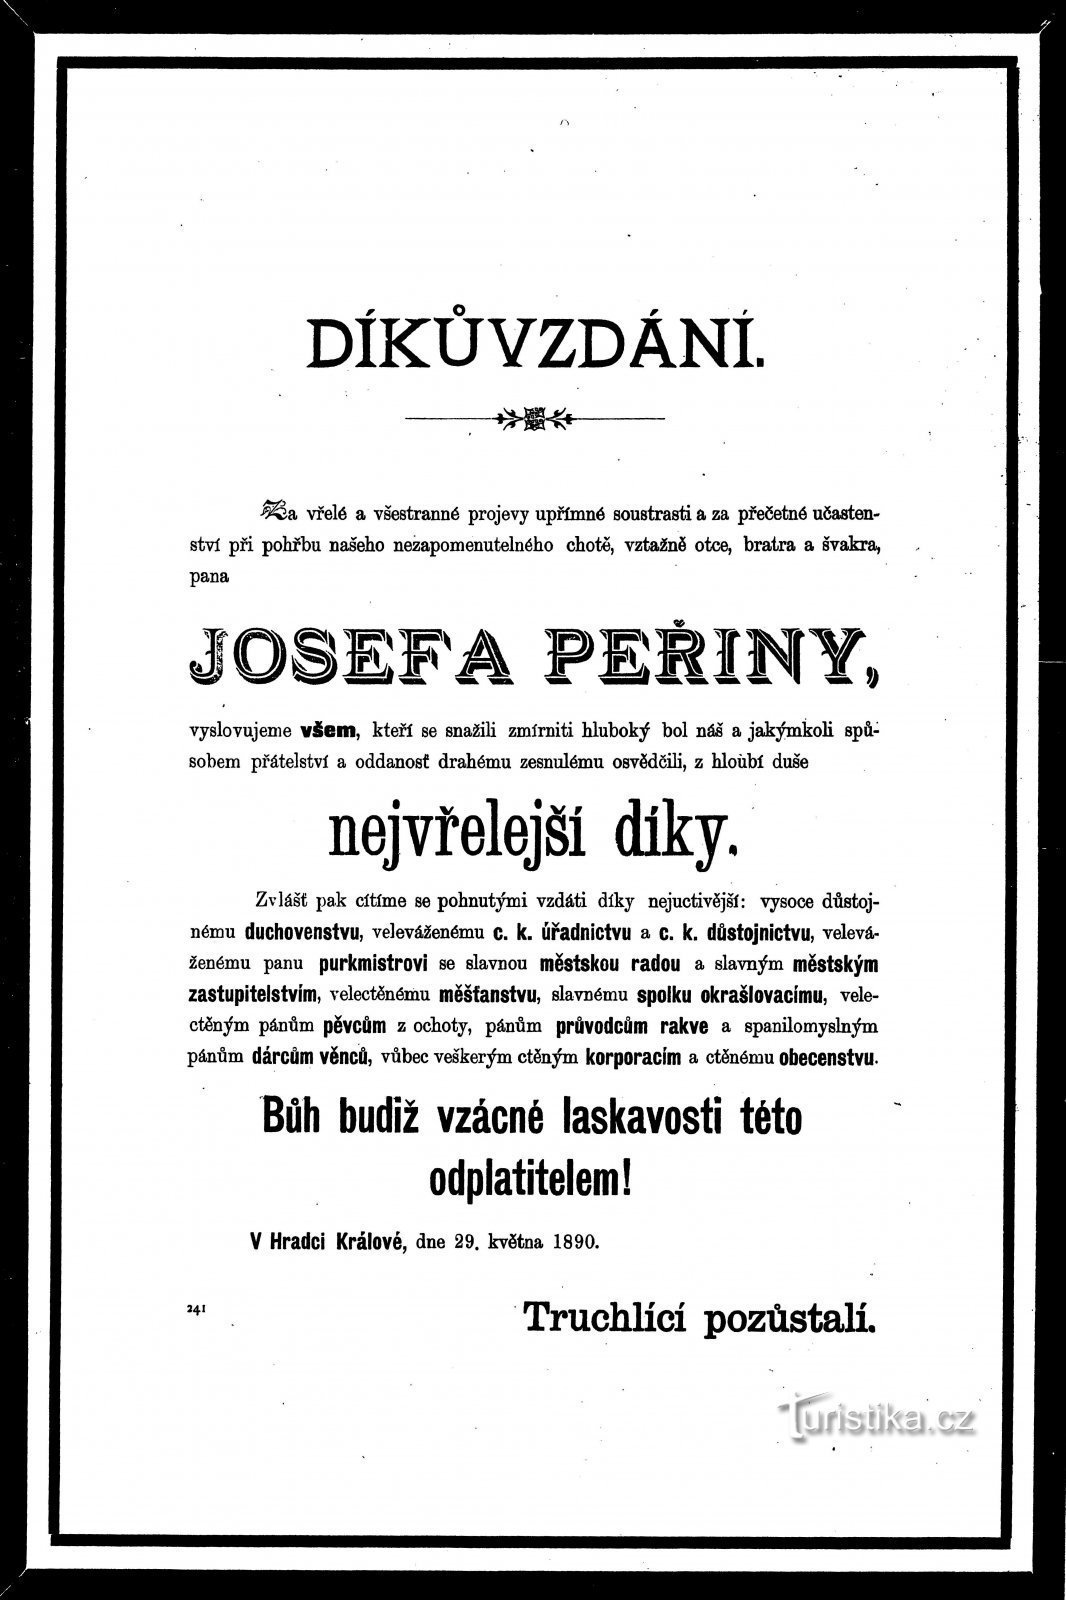 Merci d'avoir assisté aux funérailles de Josef Peřina de 1890